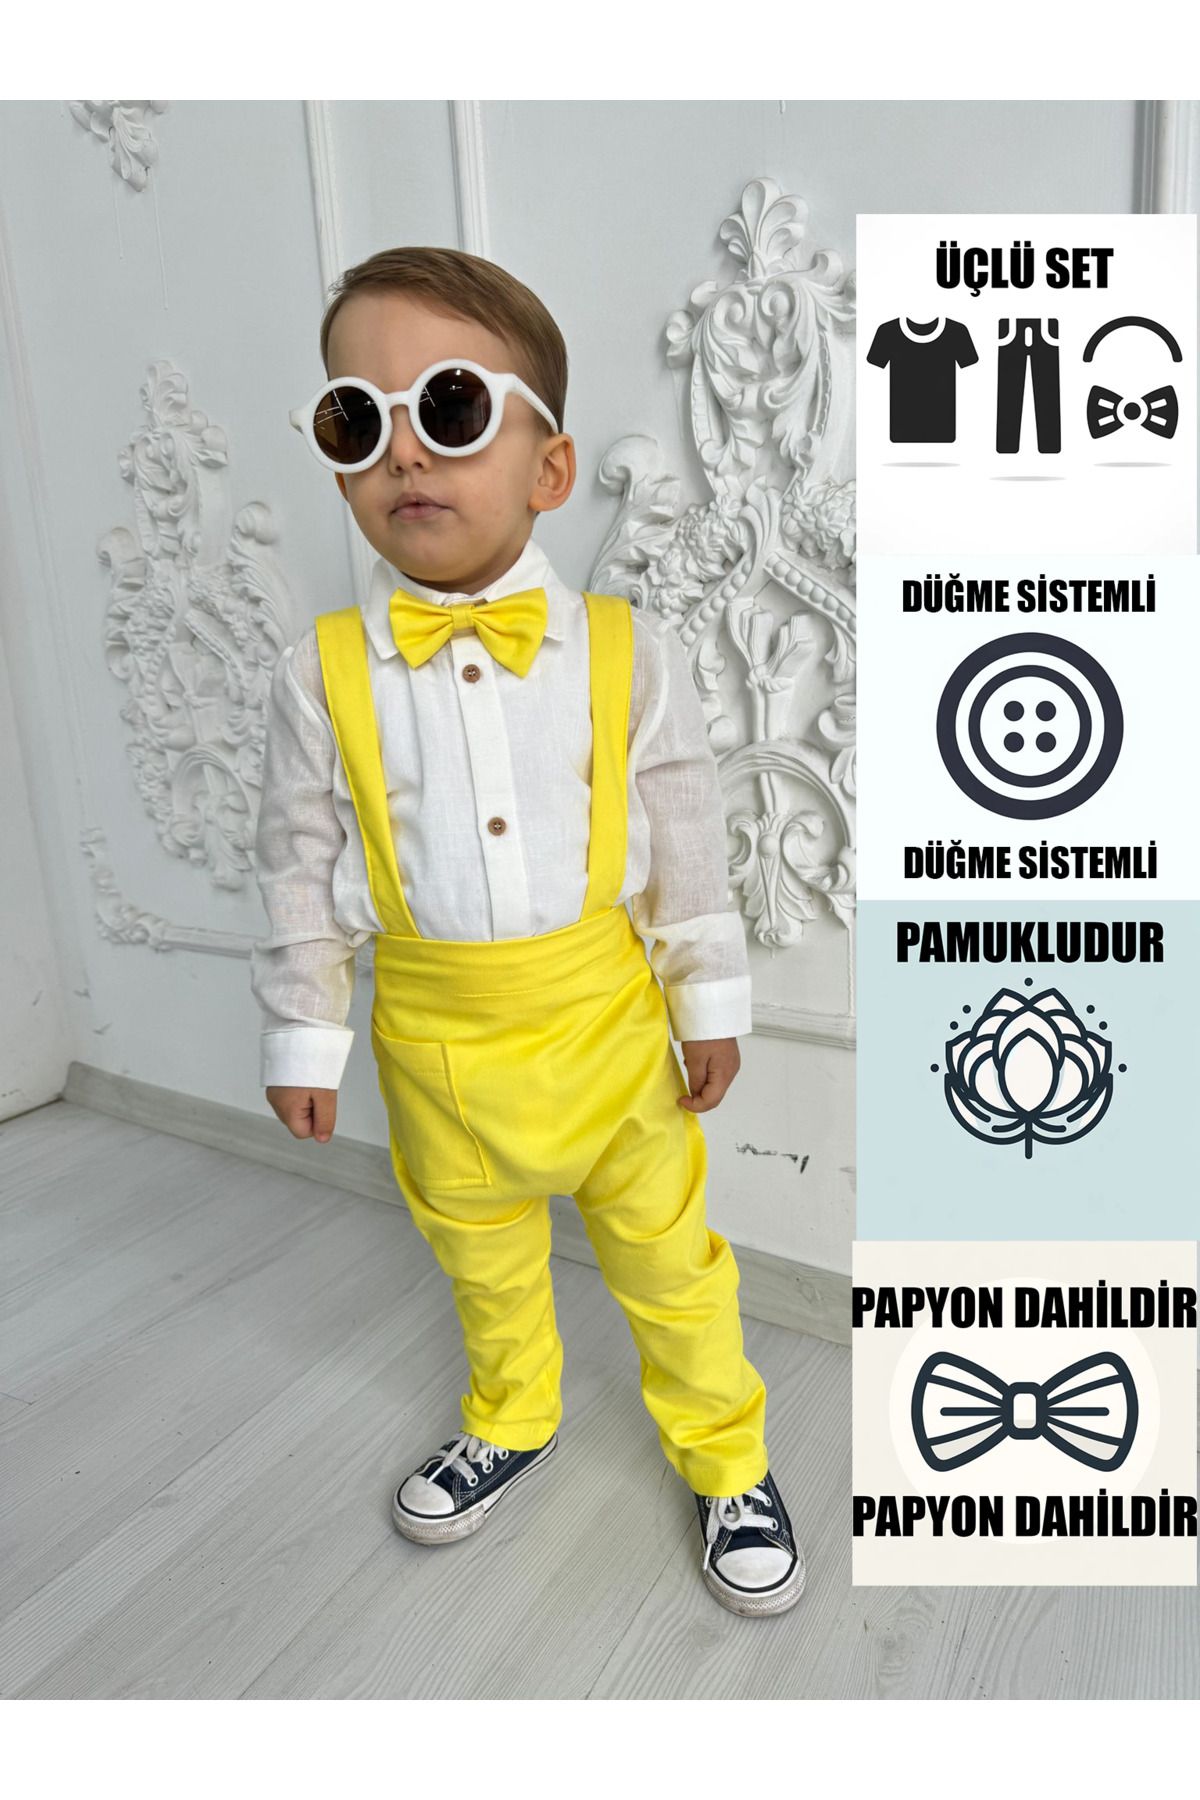 Ares Kids Fashion Sarı Salopet Ve Beyaz Gömlek Set Papyonlu Çocuk Ve Bebek Giyim Özel Gün Ve Bayramlar Kız Erkek